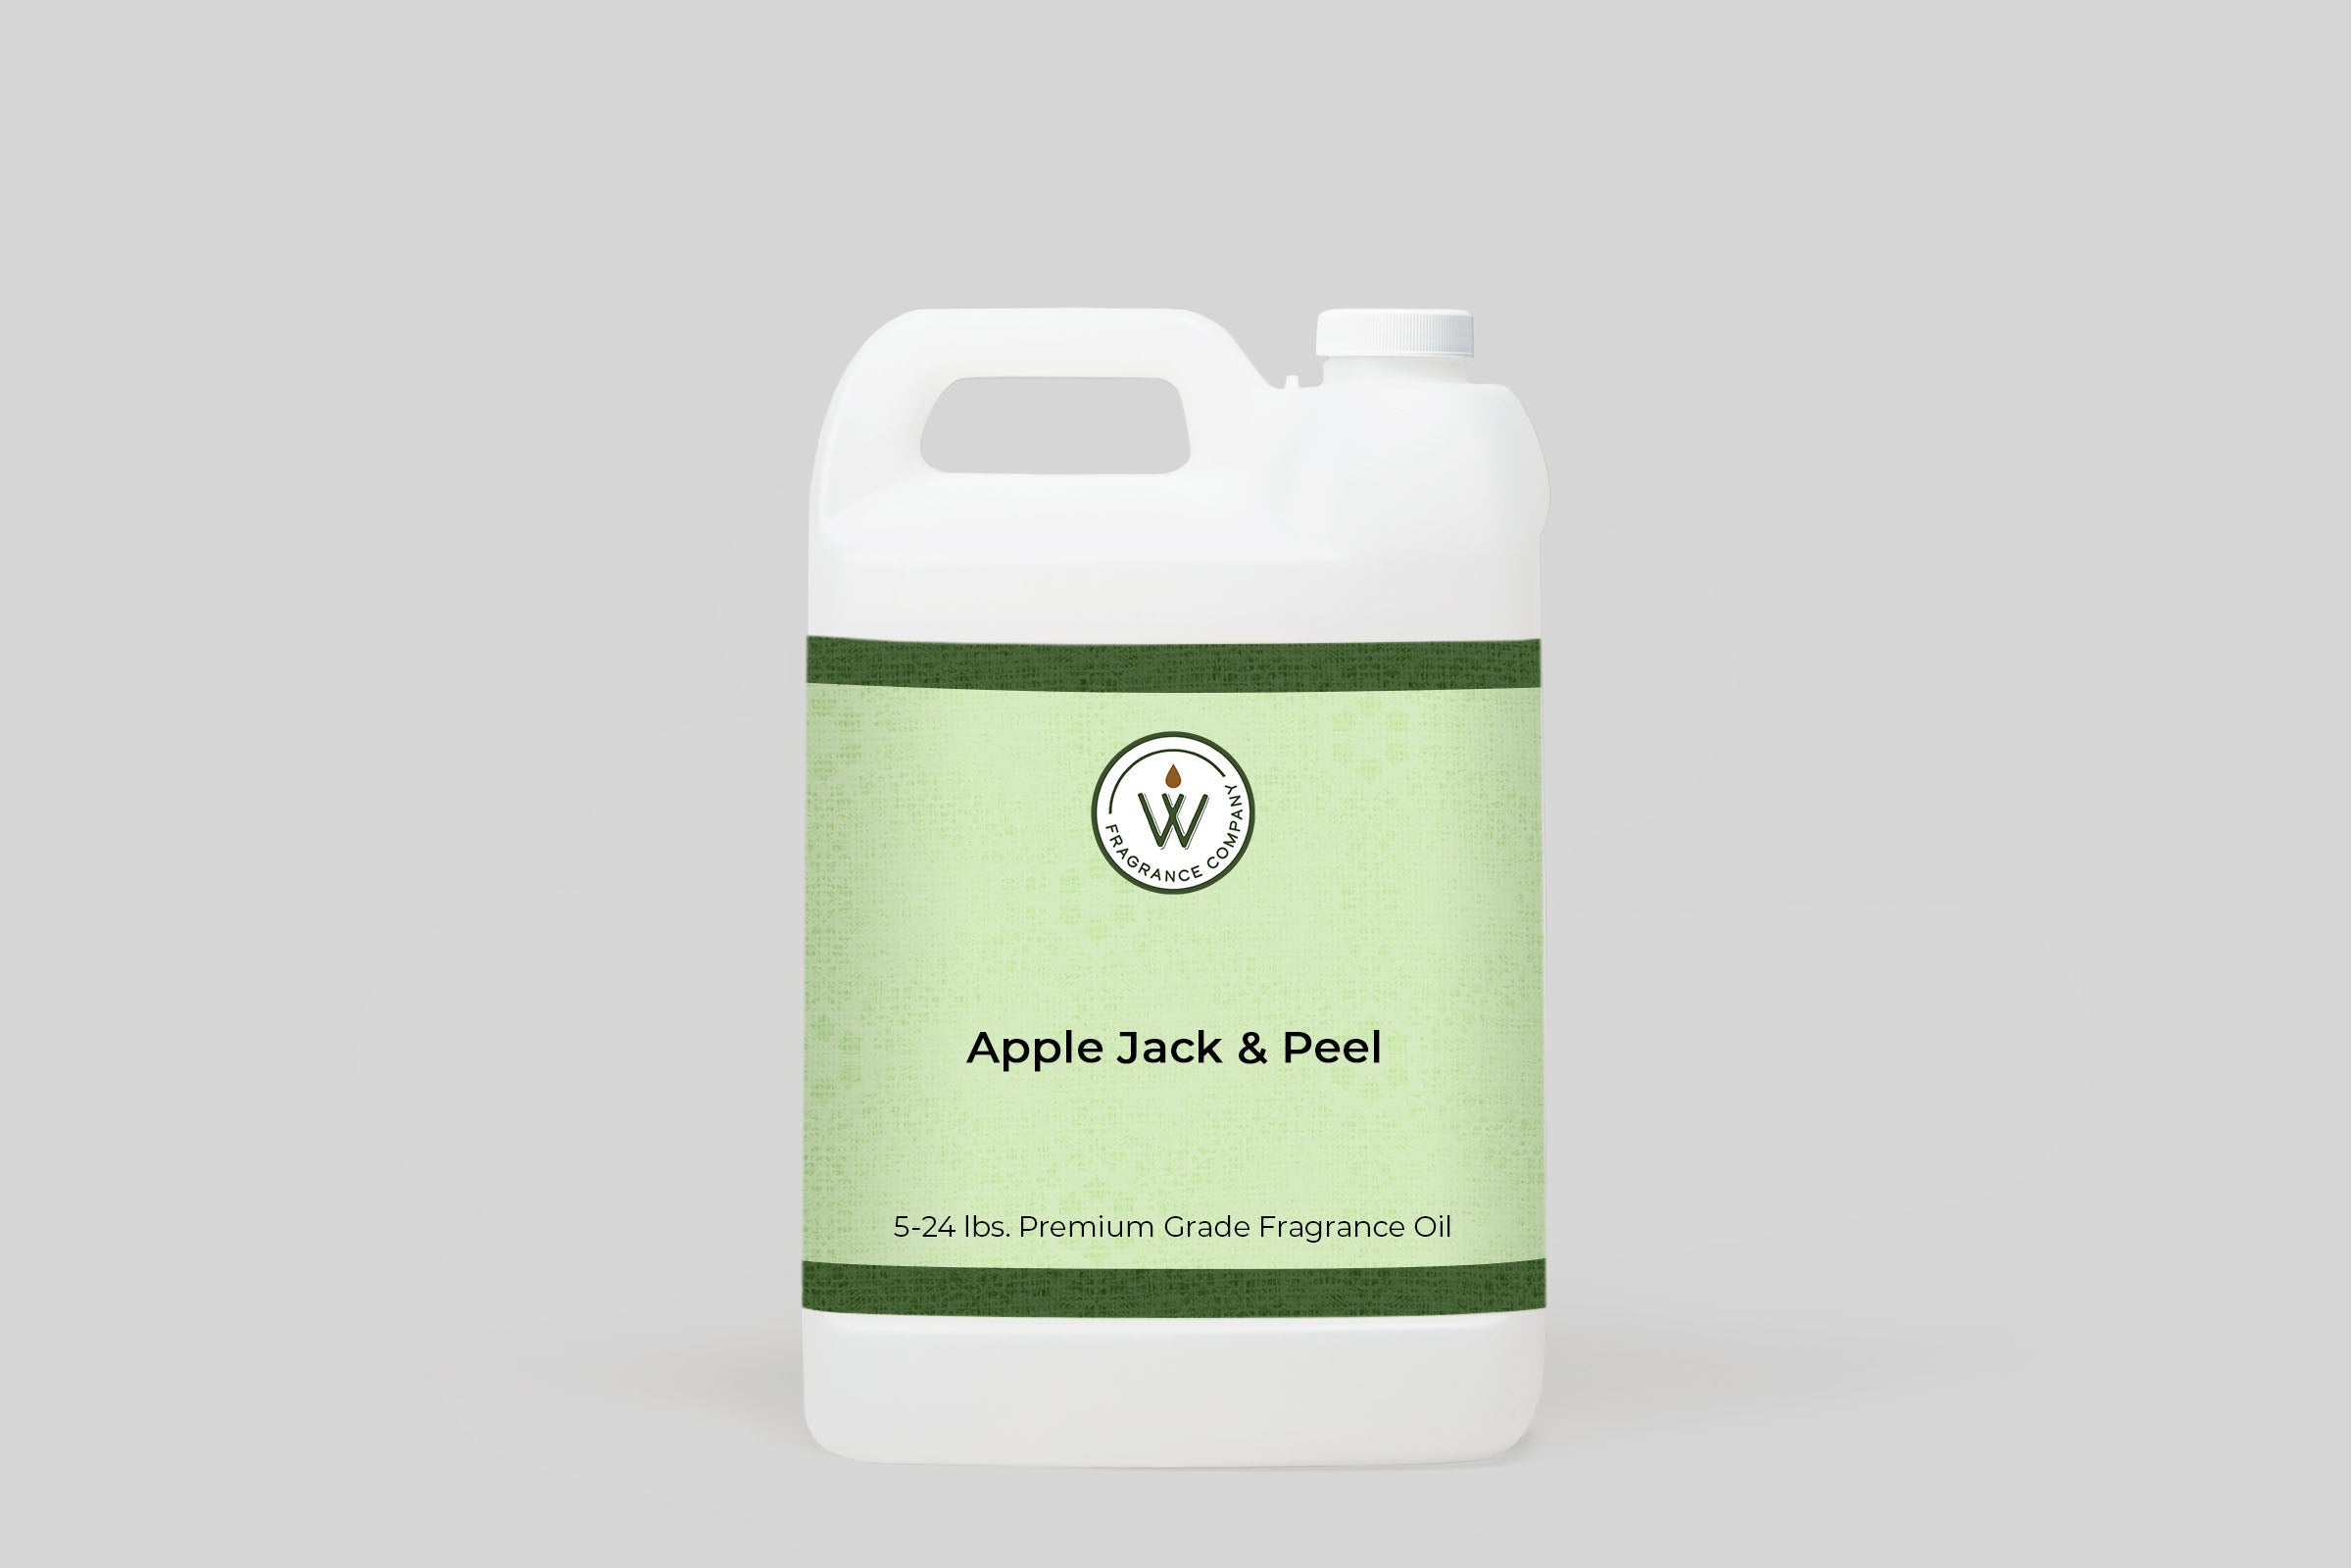 Apple Jack & Peel Fragrance Oil